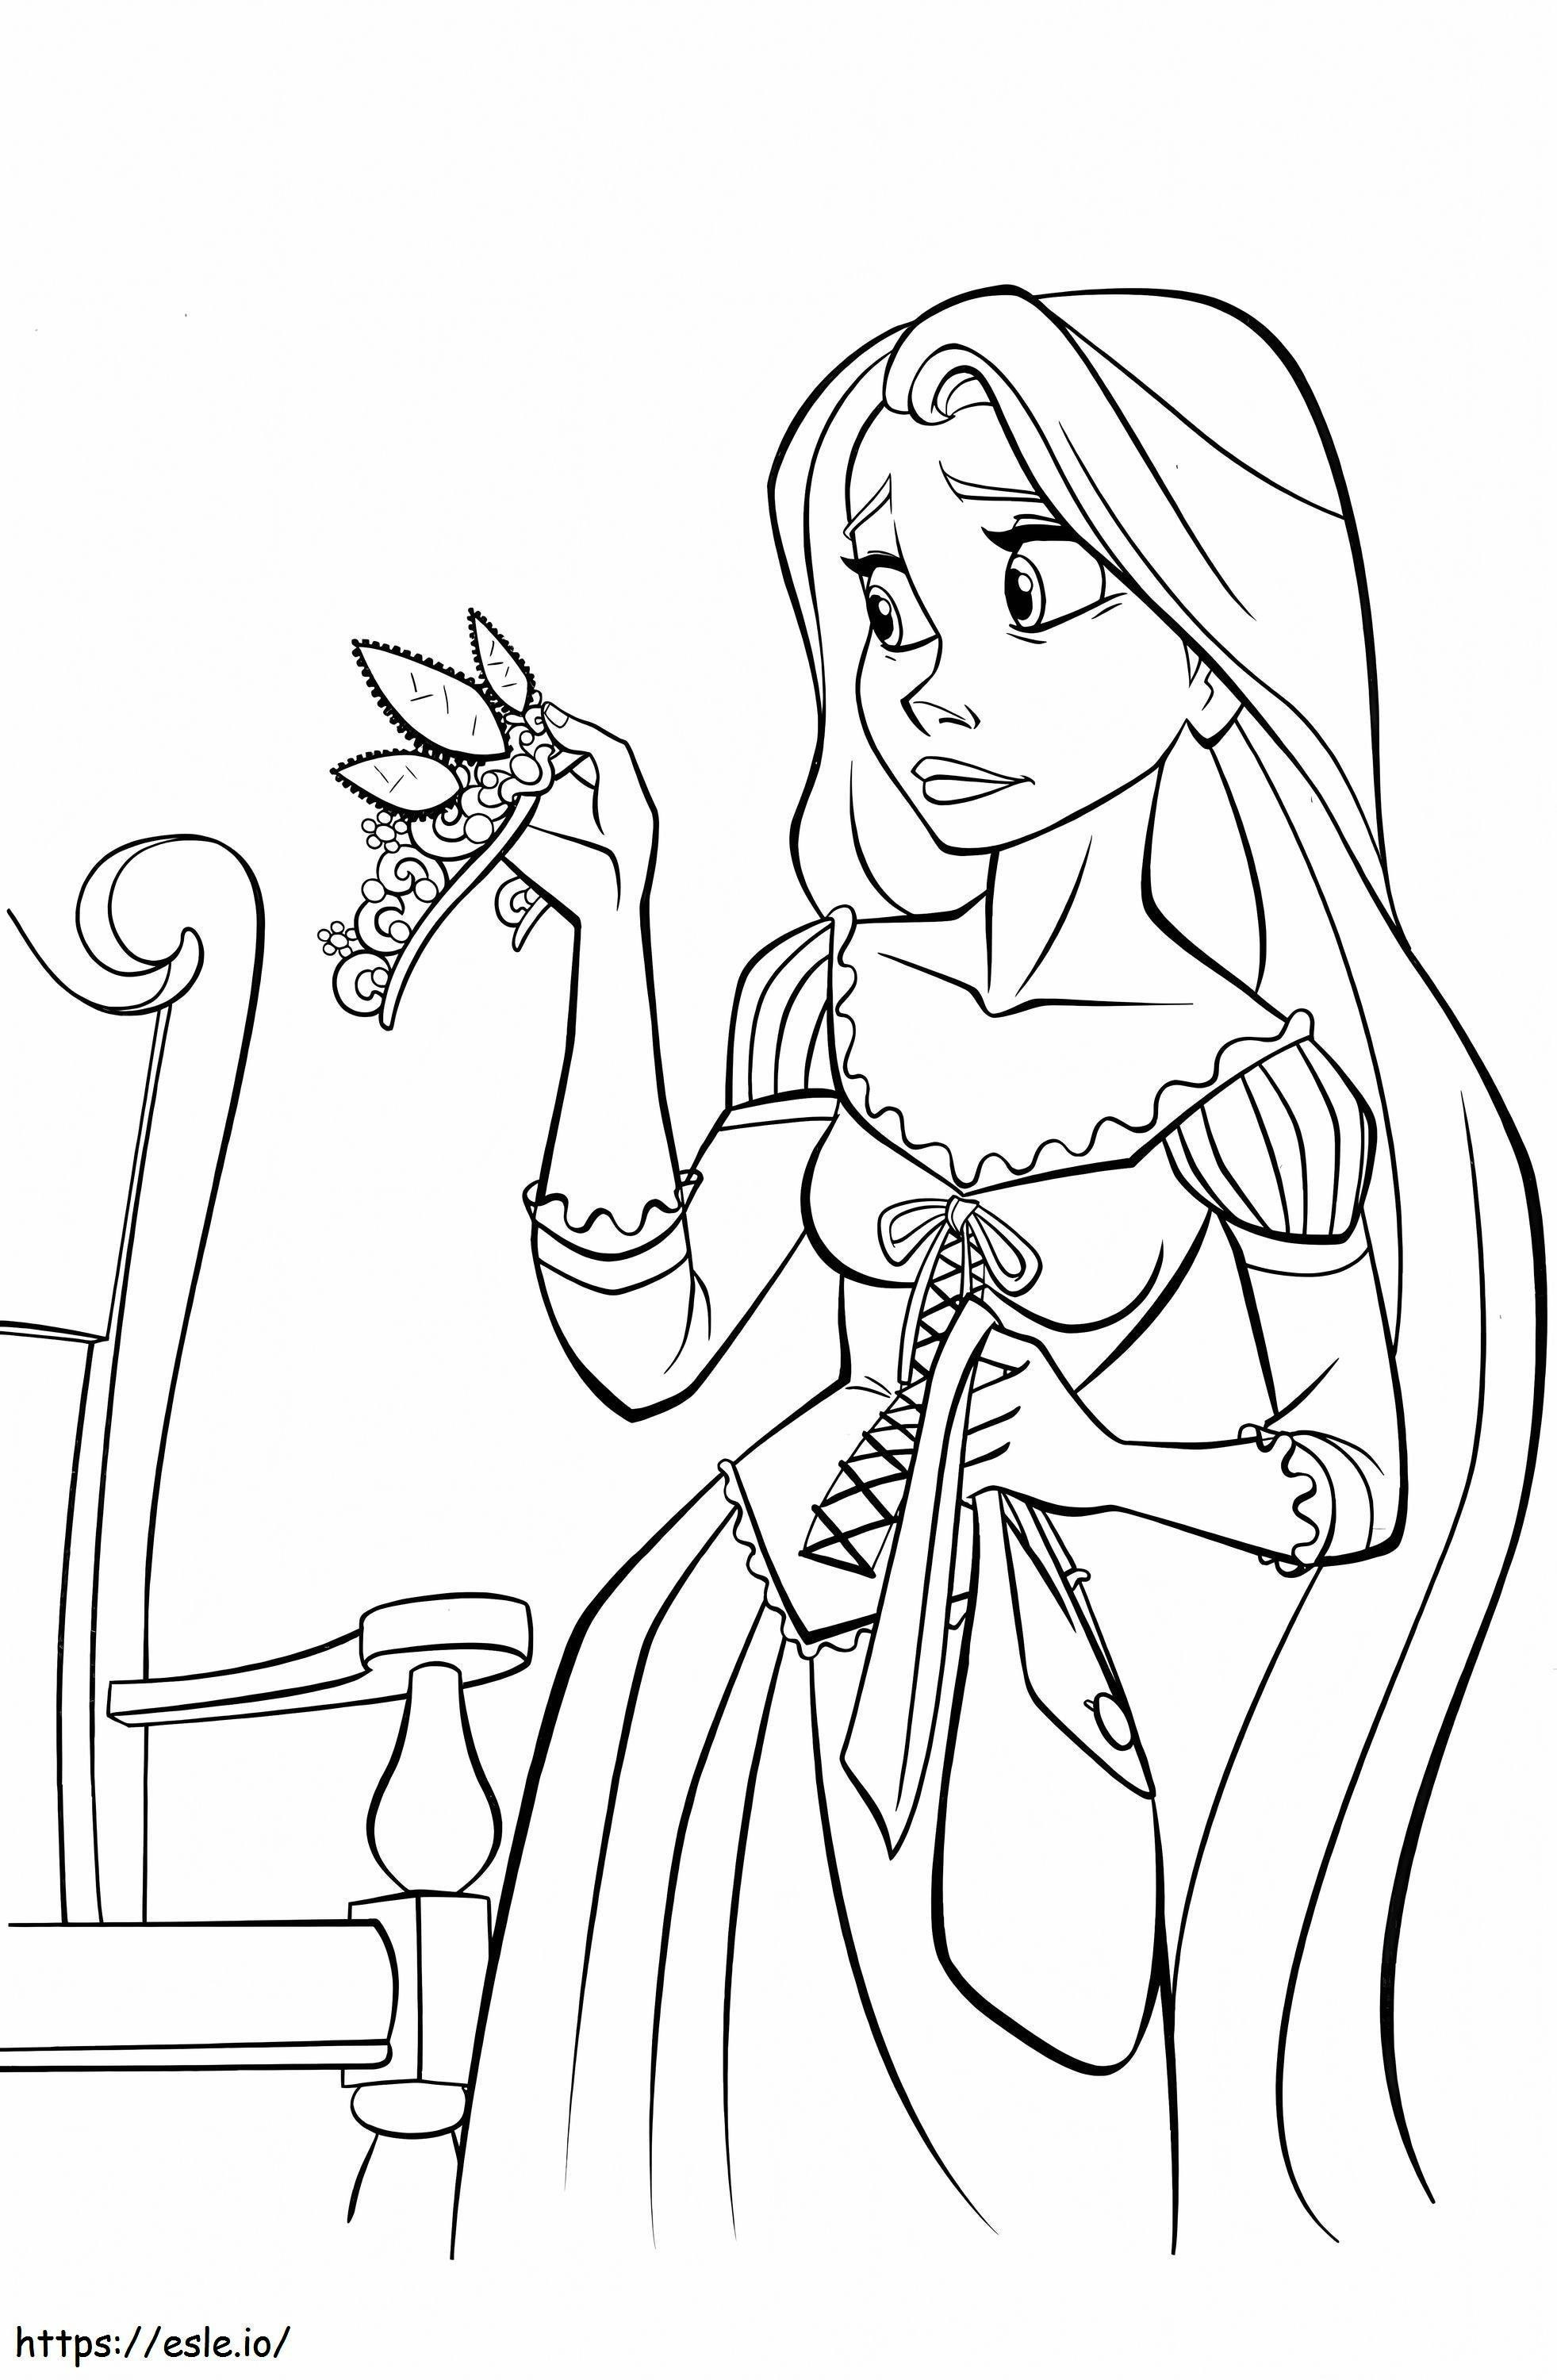 Sad Rapunzel coloring page